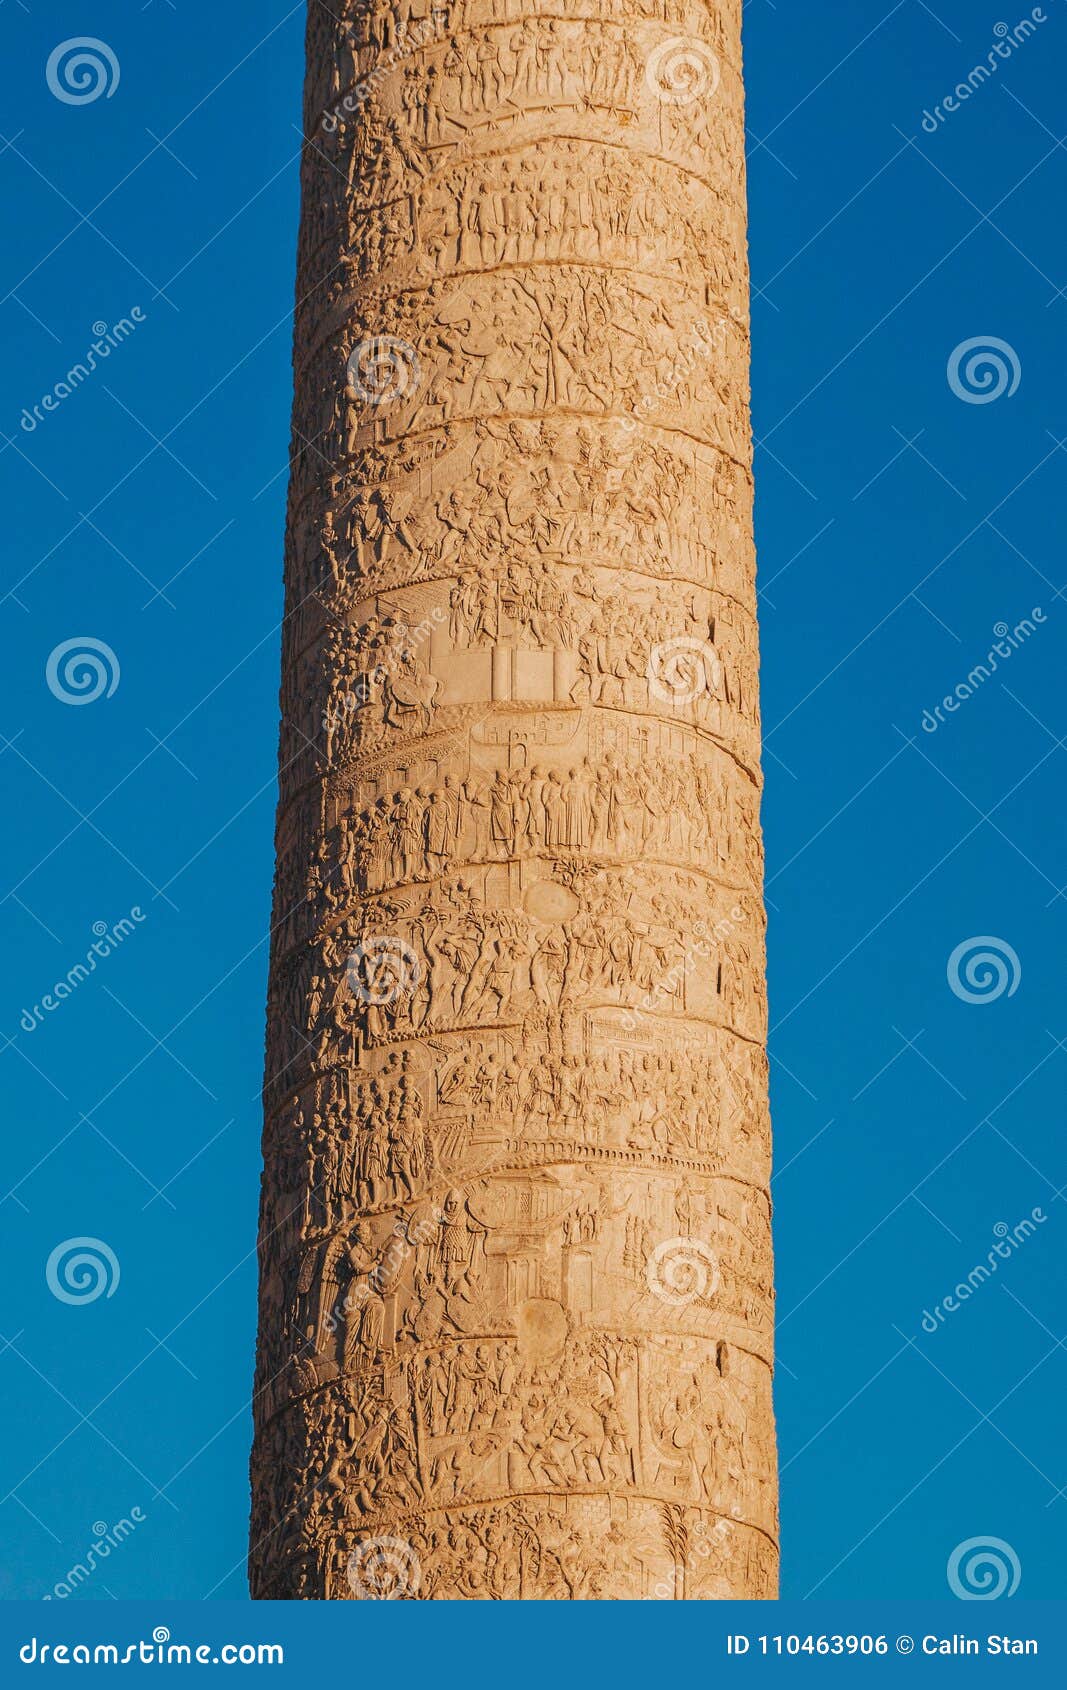 trajan`s column colonna traiana in rome, italy. commemorates r